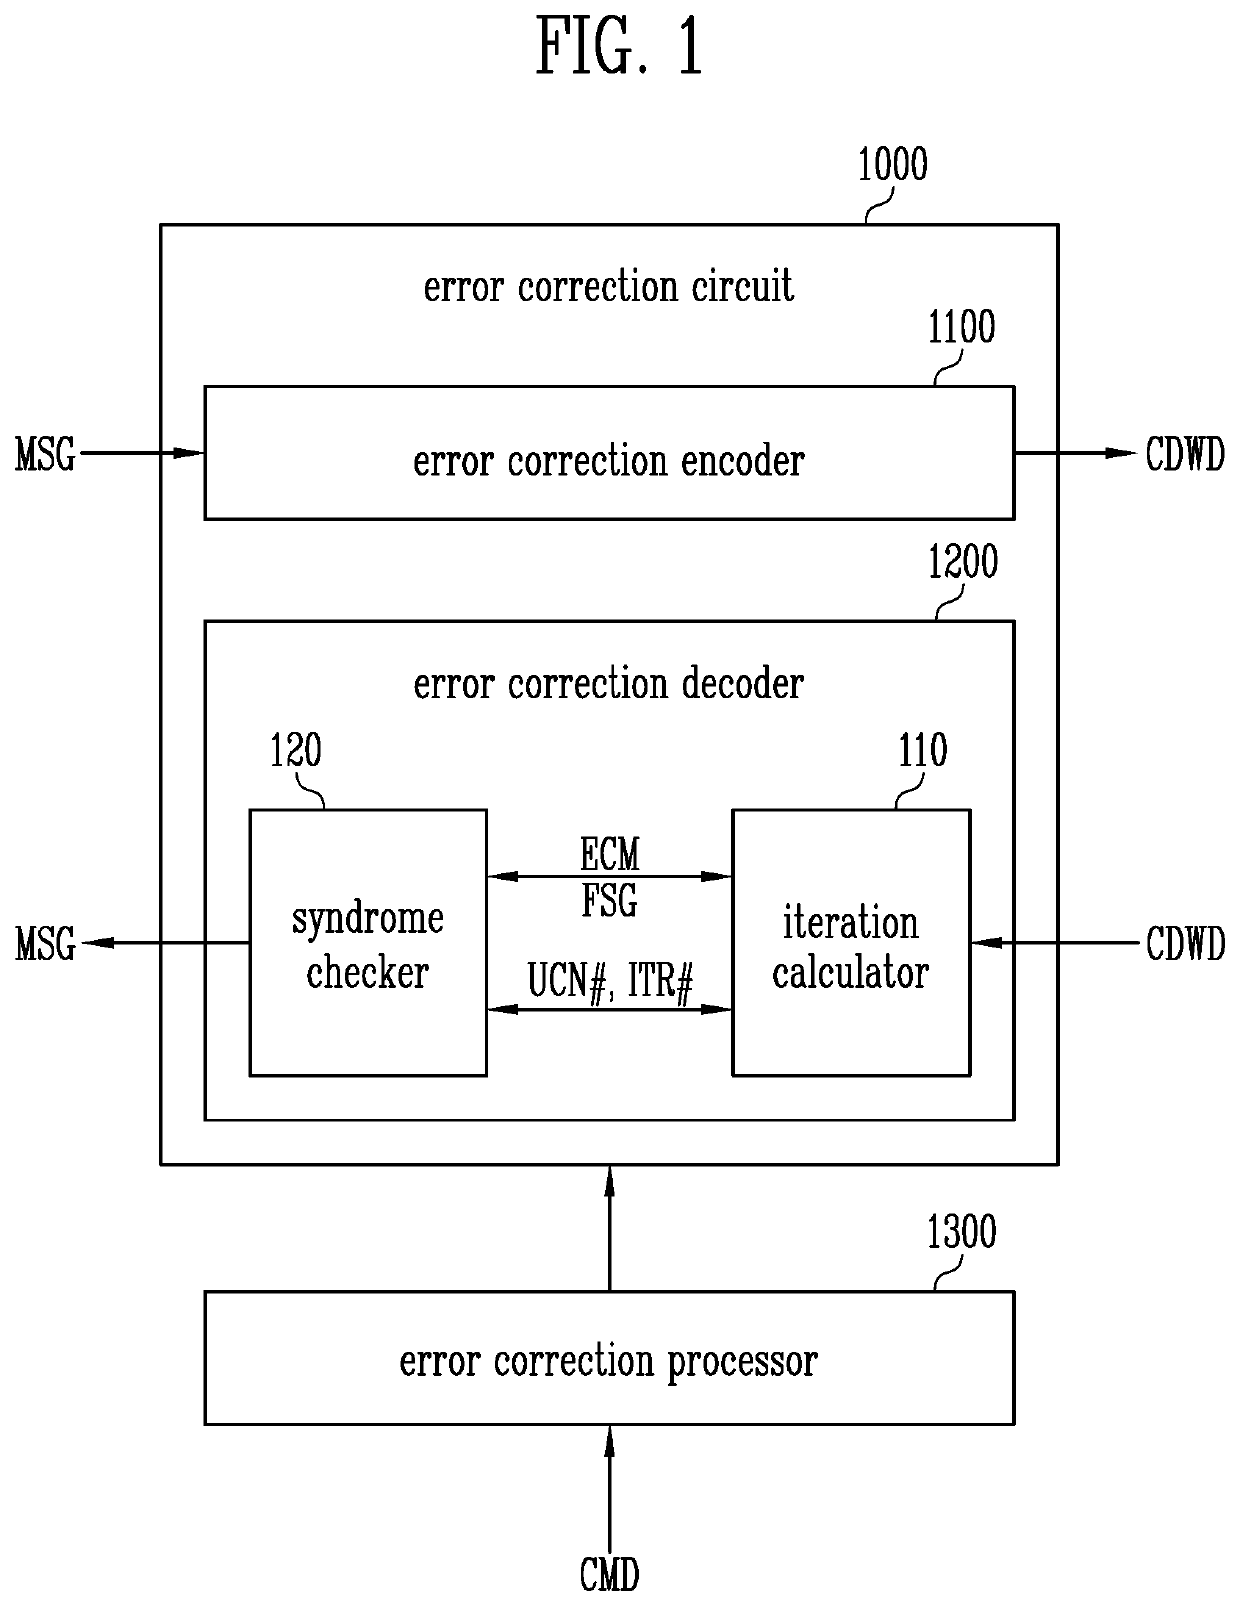 Error correction decoder, error correction circuit having error correction decoder, and method of operating error correction decoder